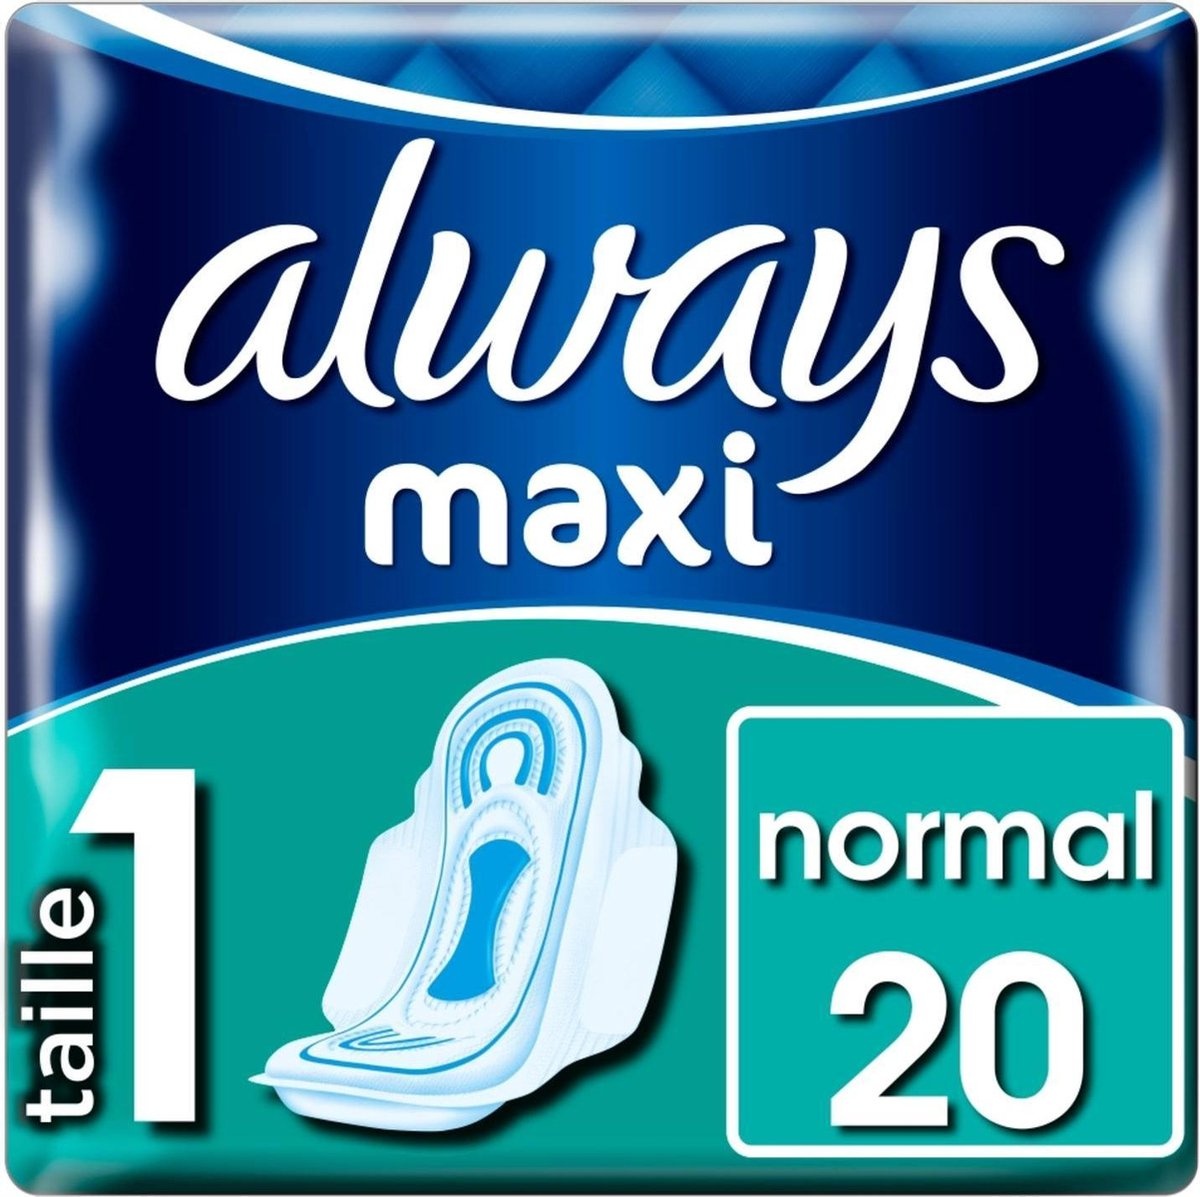 Always Maxi Serviettes Hygiéniques Normales 20st.